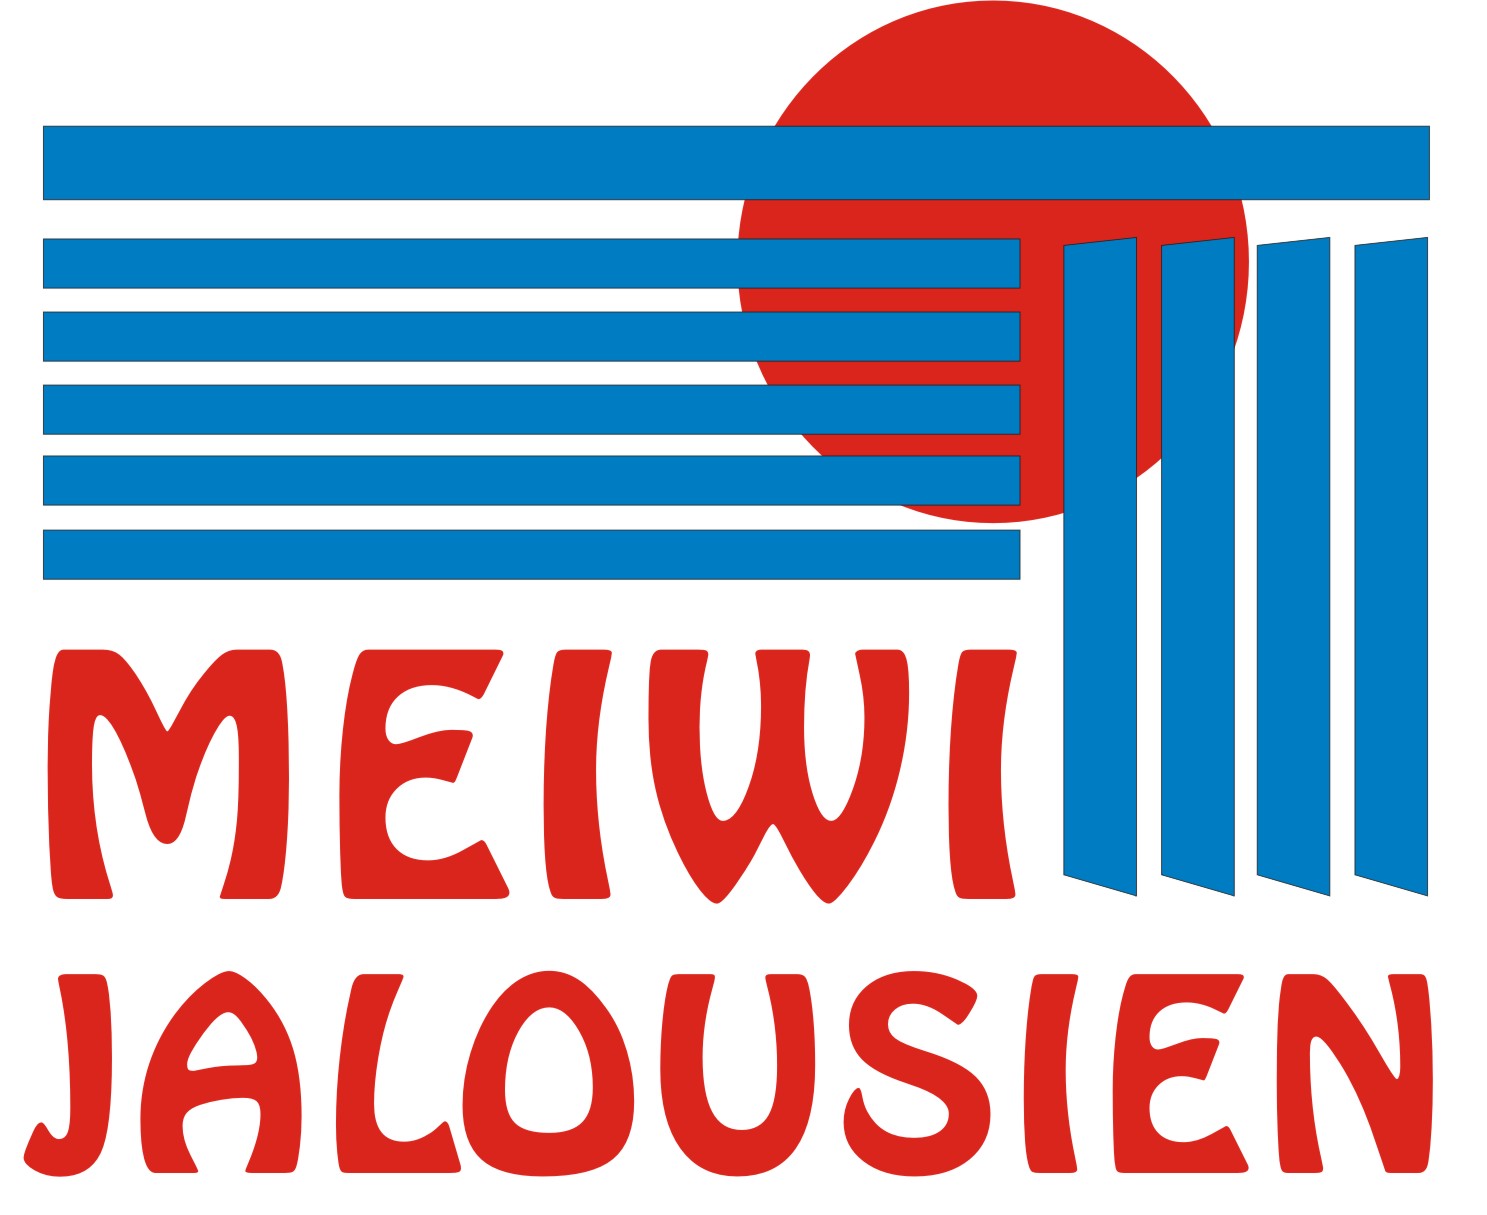 Meiwi-Jalousien